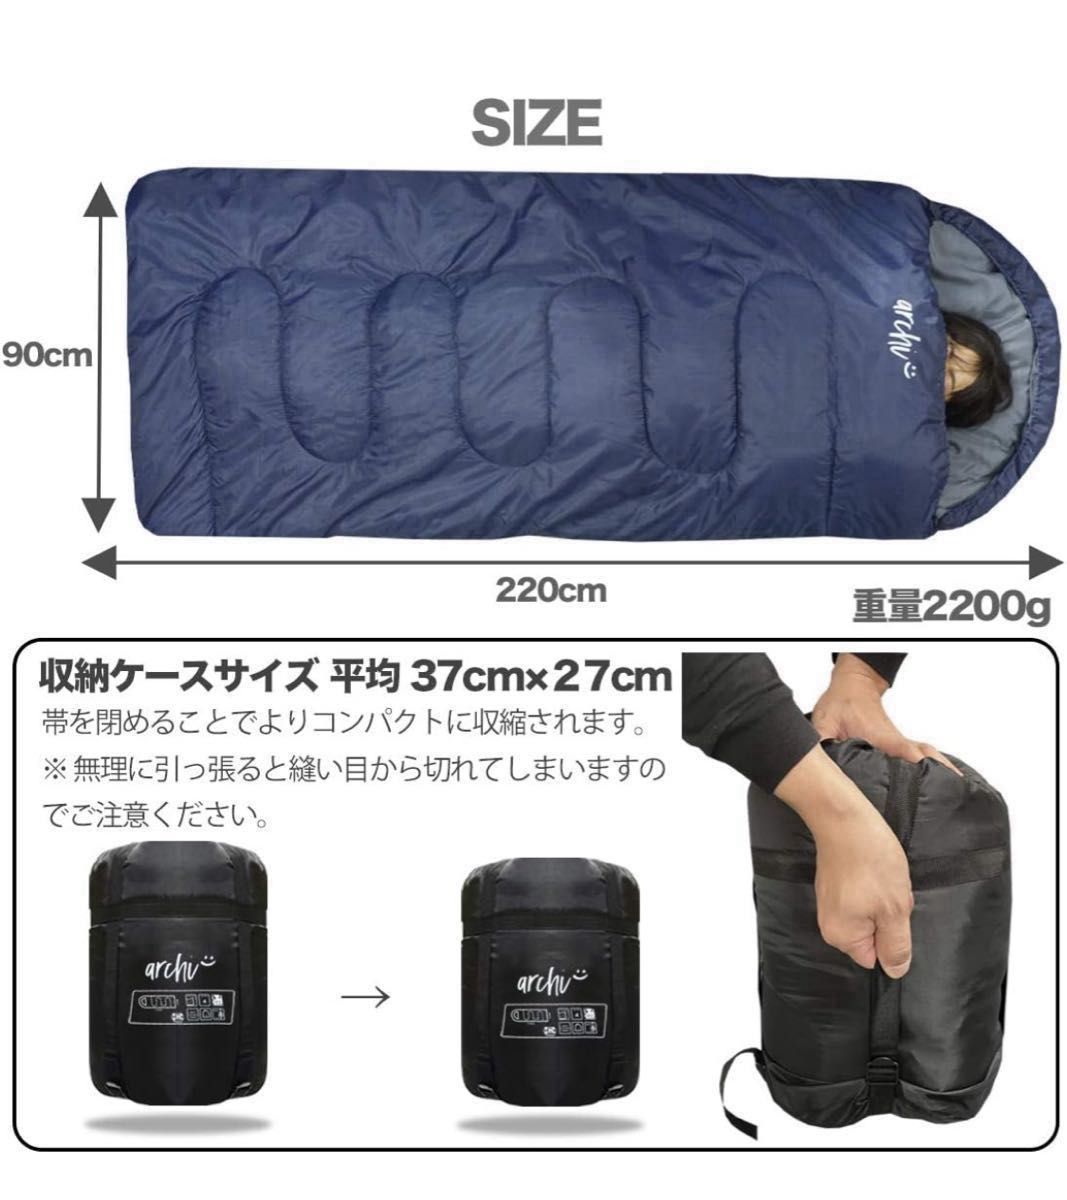 3個 210T ワイドサイズ 寝袋 シュラフ 封筒型 抗菌仕様 車中泊 防災 最低使用温度 -15℃